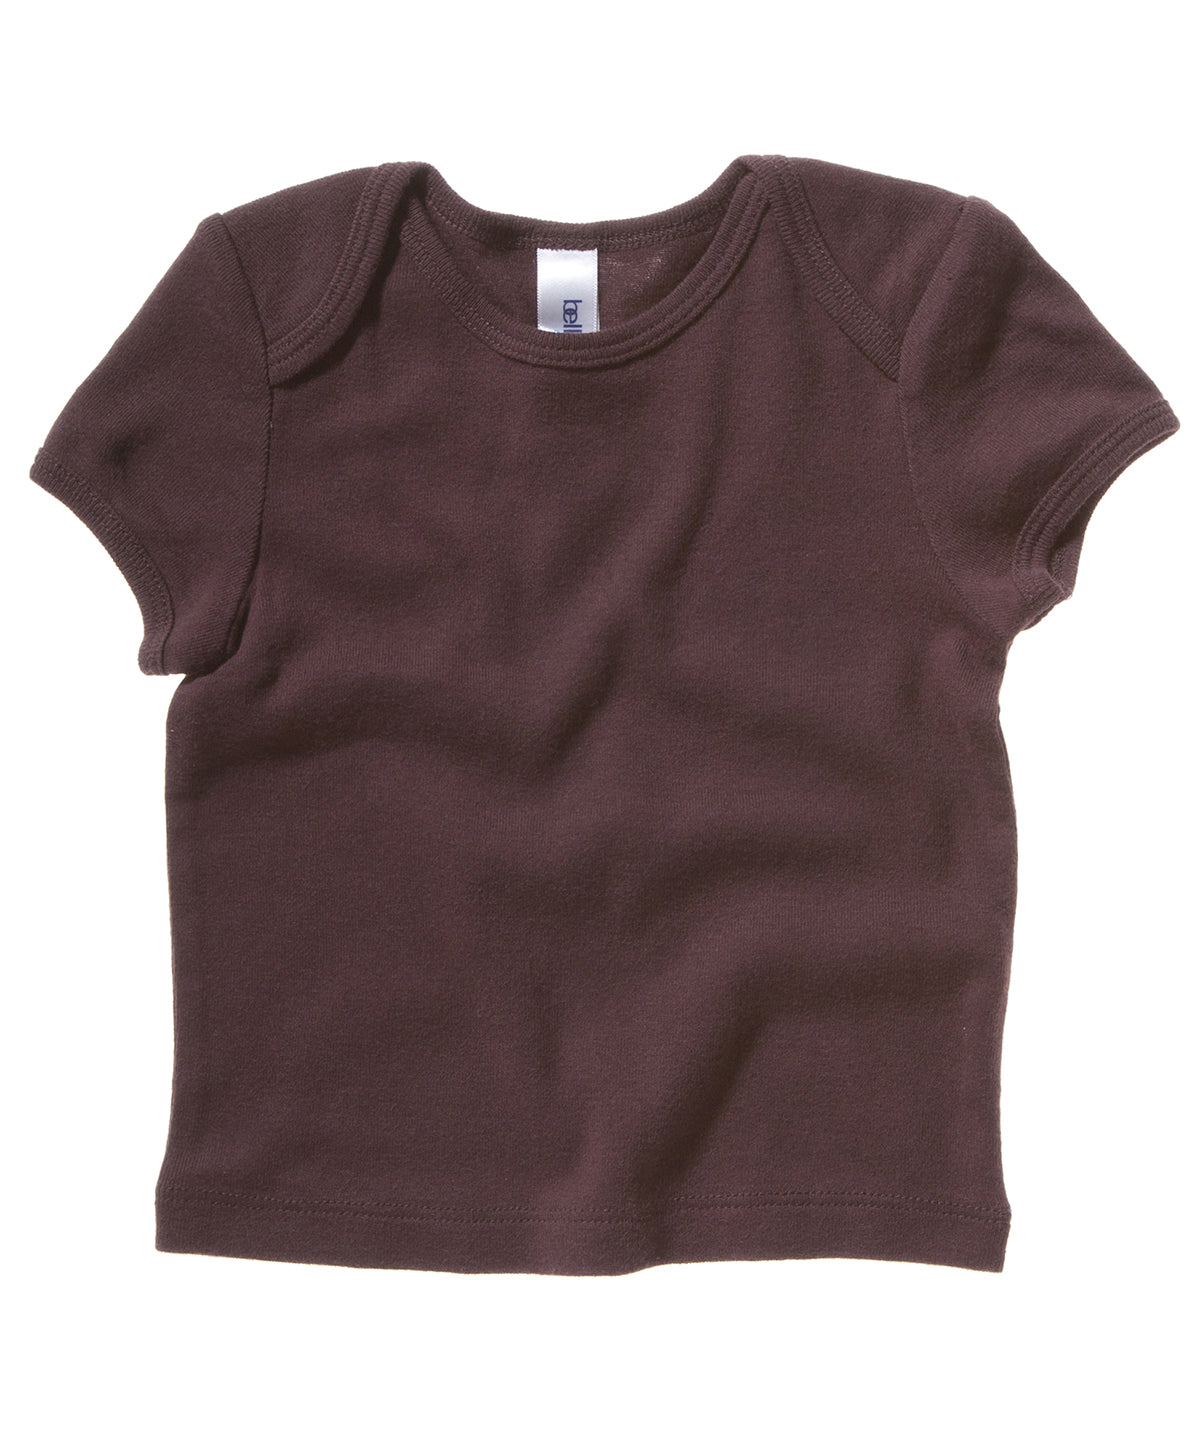 Stuttermabolir - Short Sleeve Baby Rib T-shirt